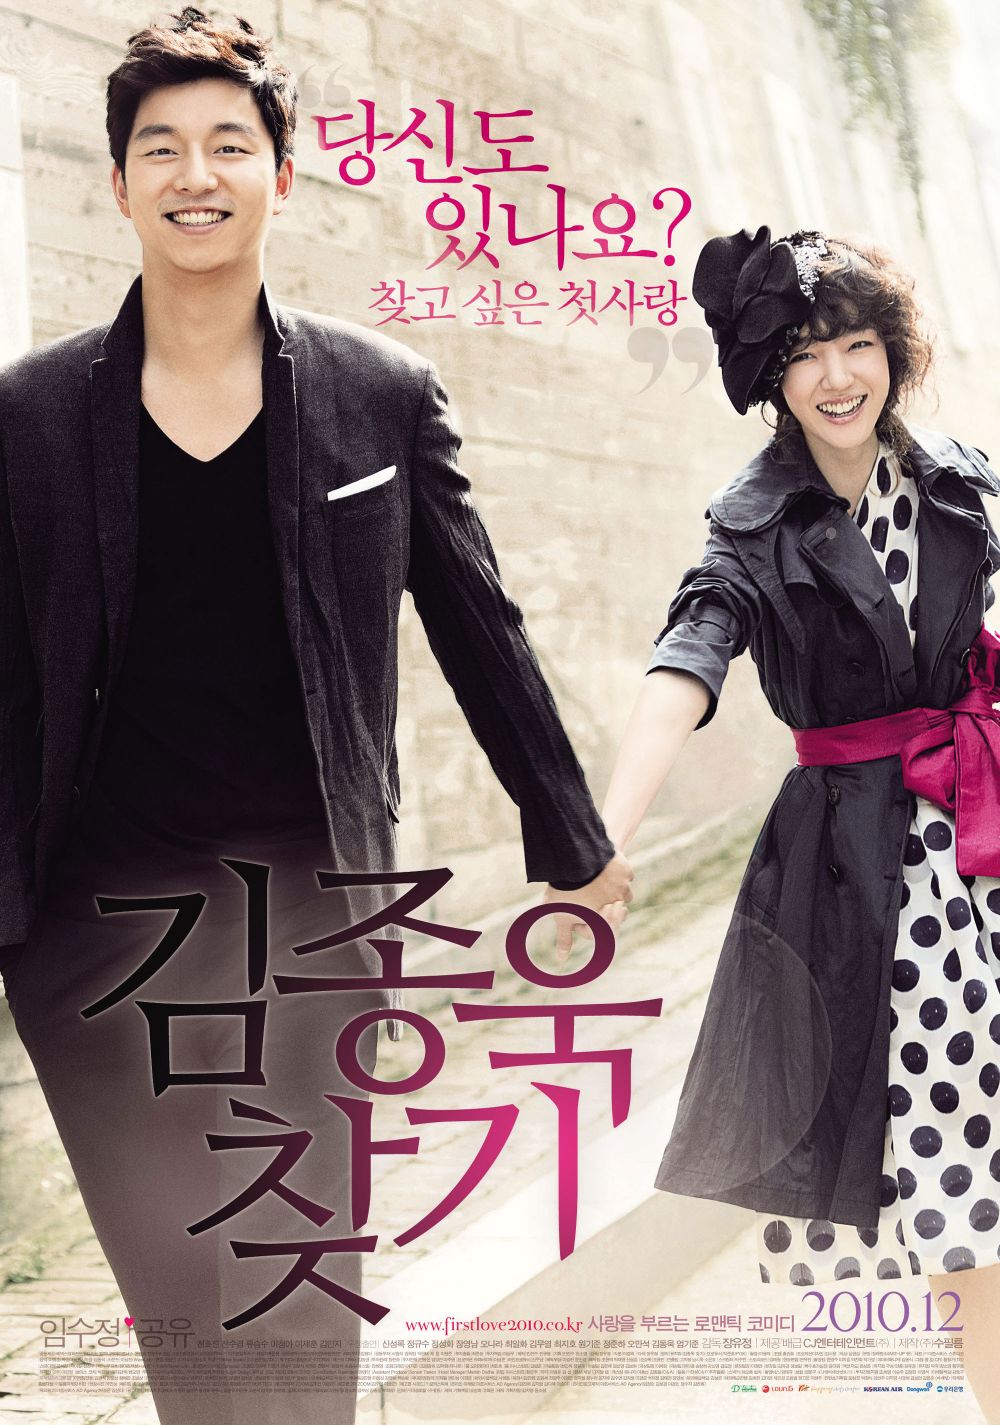 7 Film layar lebar ini layak diadaptasi ke dalam drama Korea